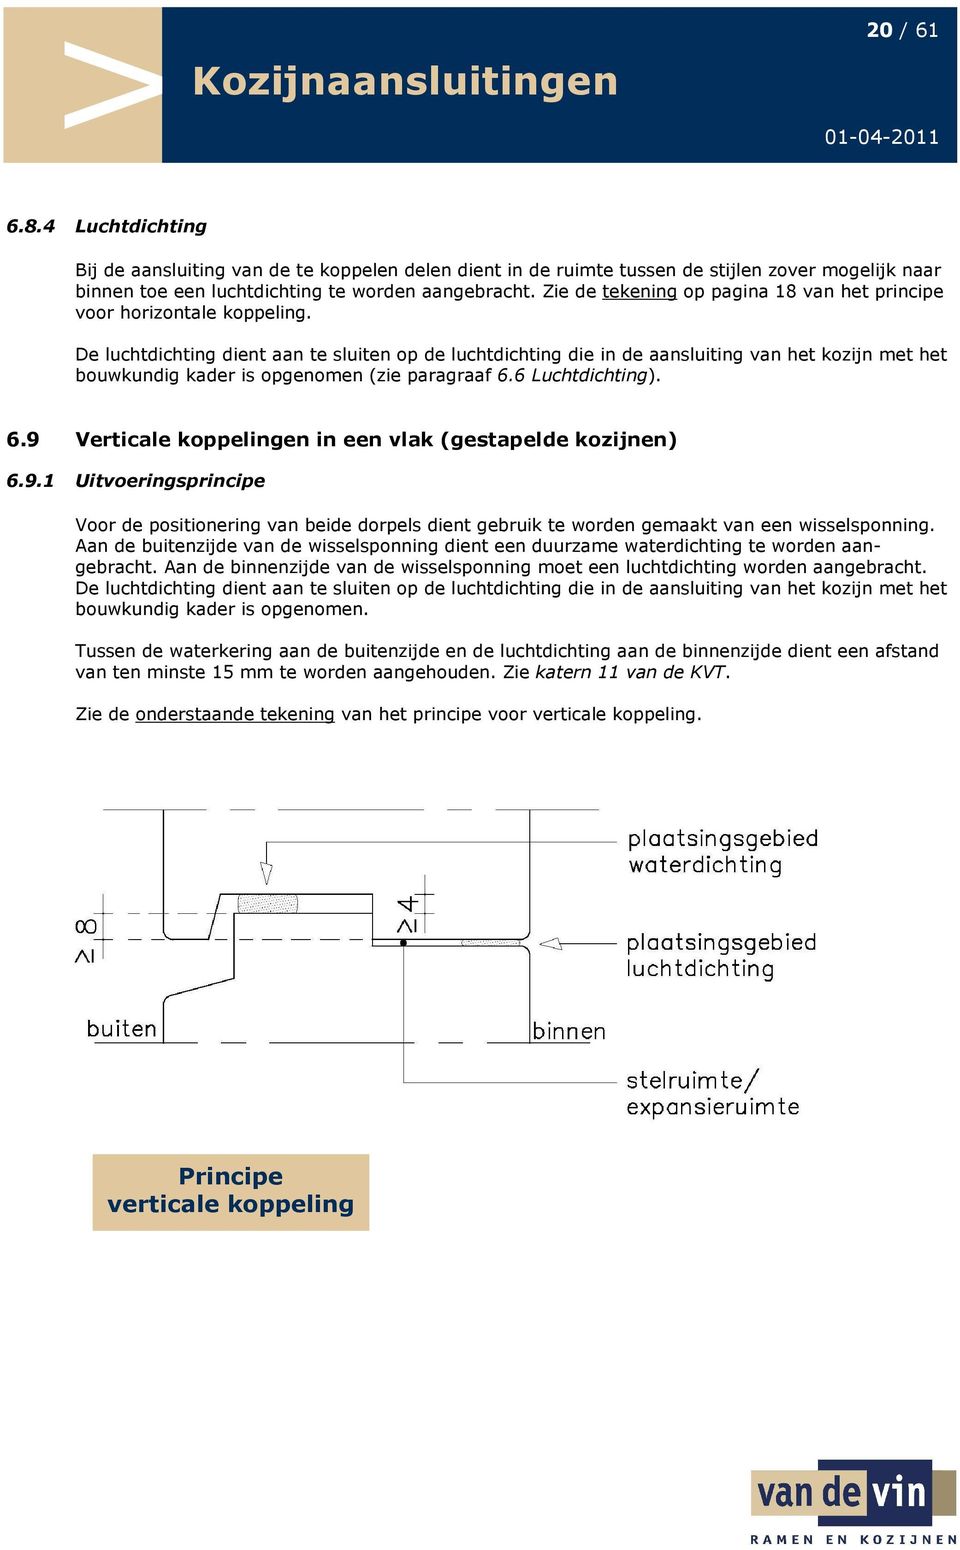 De luchtdichting dient aan te sluiten op de luchtdichting die in de aansluiting van het kozijn met het bouwkundig kader is opgenomen (zie paragraaf 6.